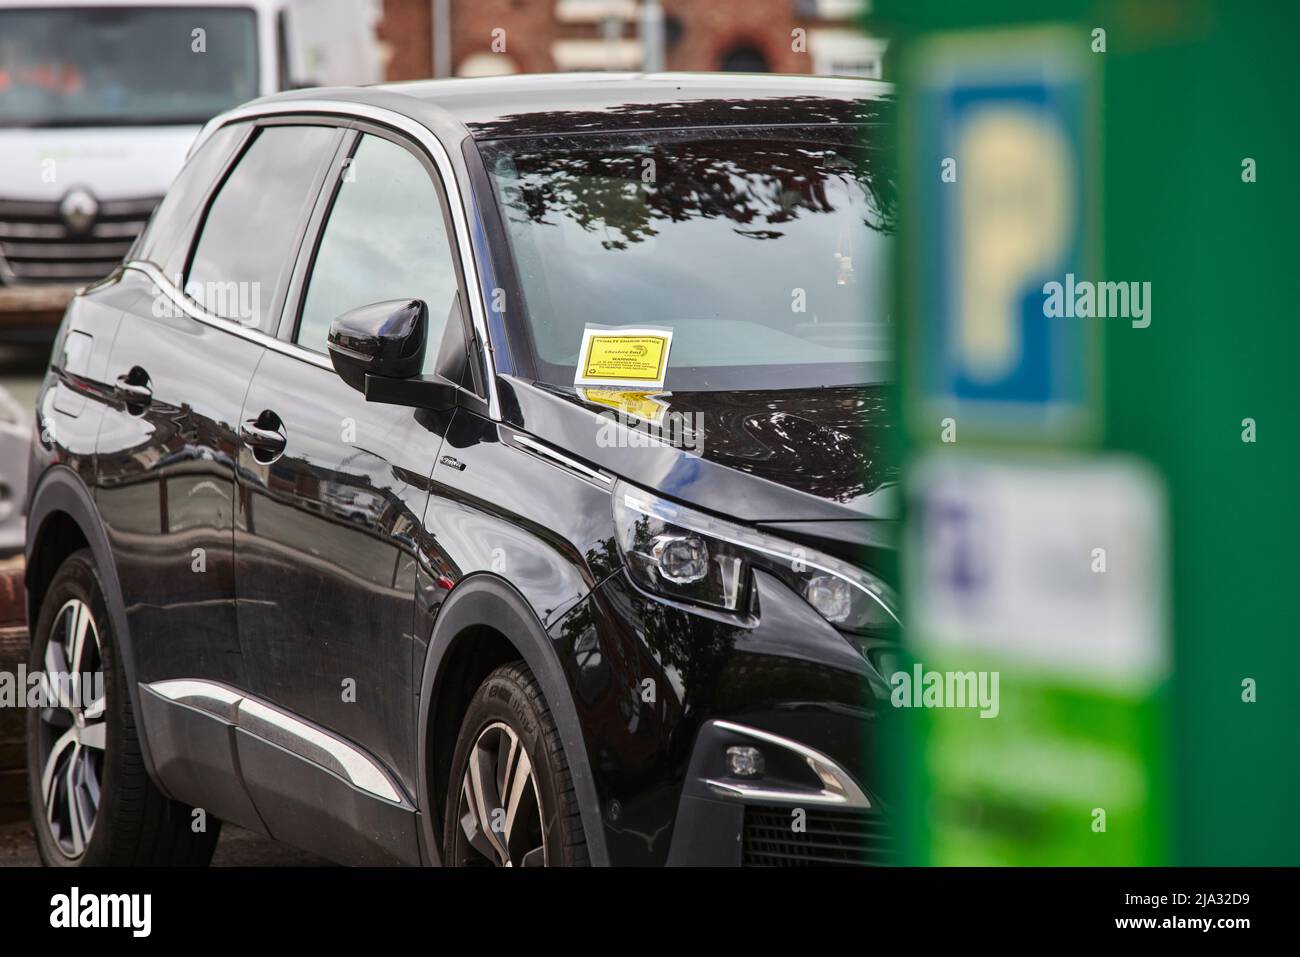 Compteur de stationnement Cheshire East dans un parking de Macclesfield avec un billet de stationnement émis pour une voiture garée Banque D'Images